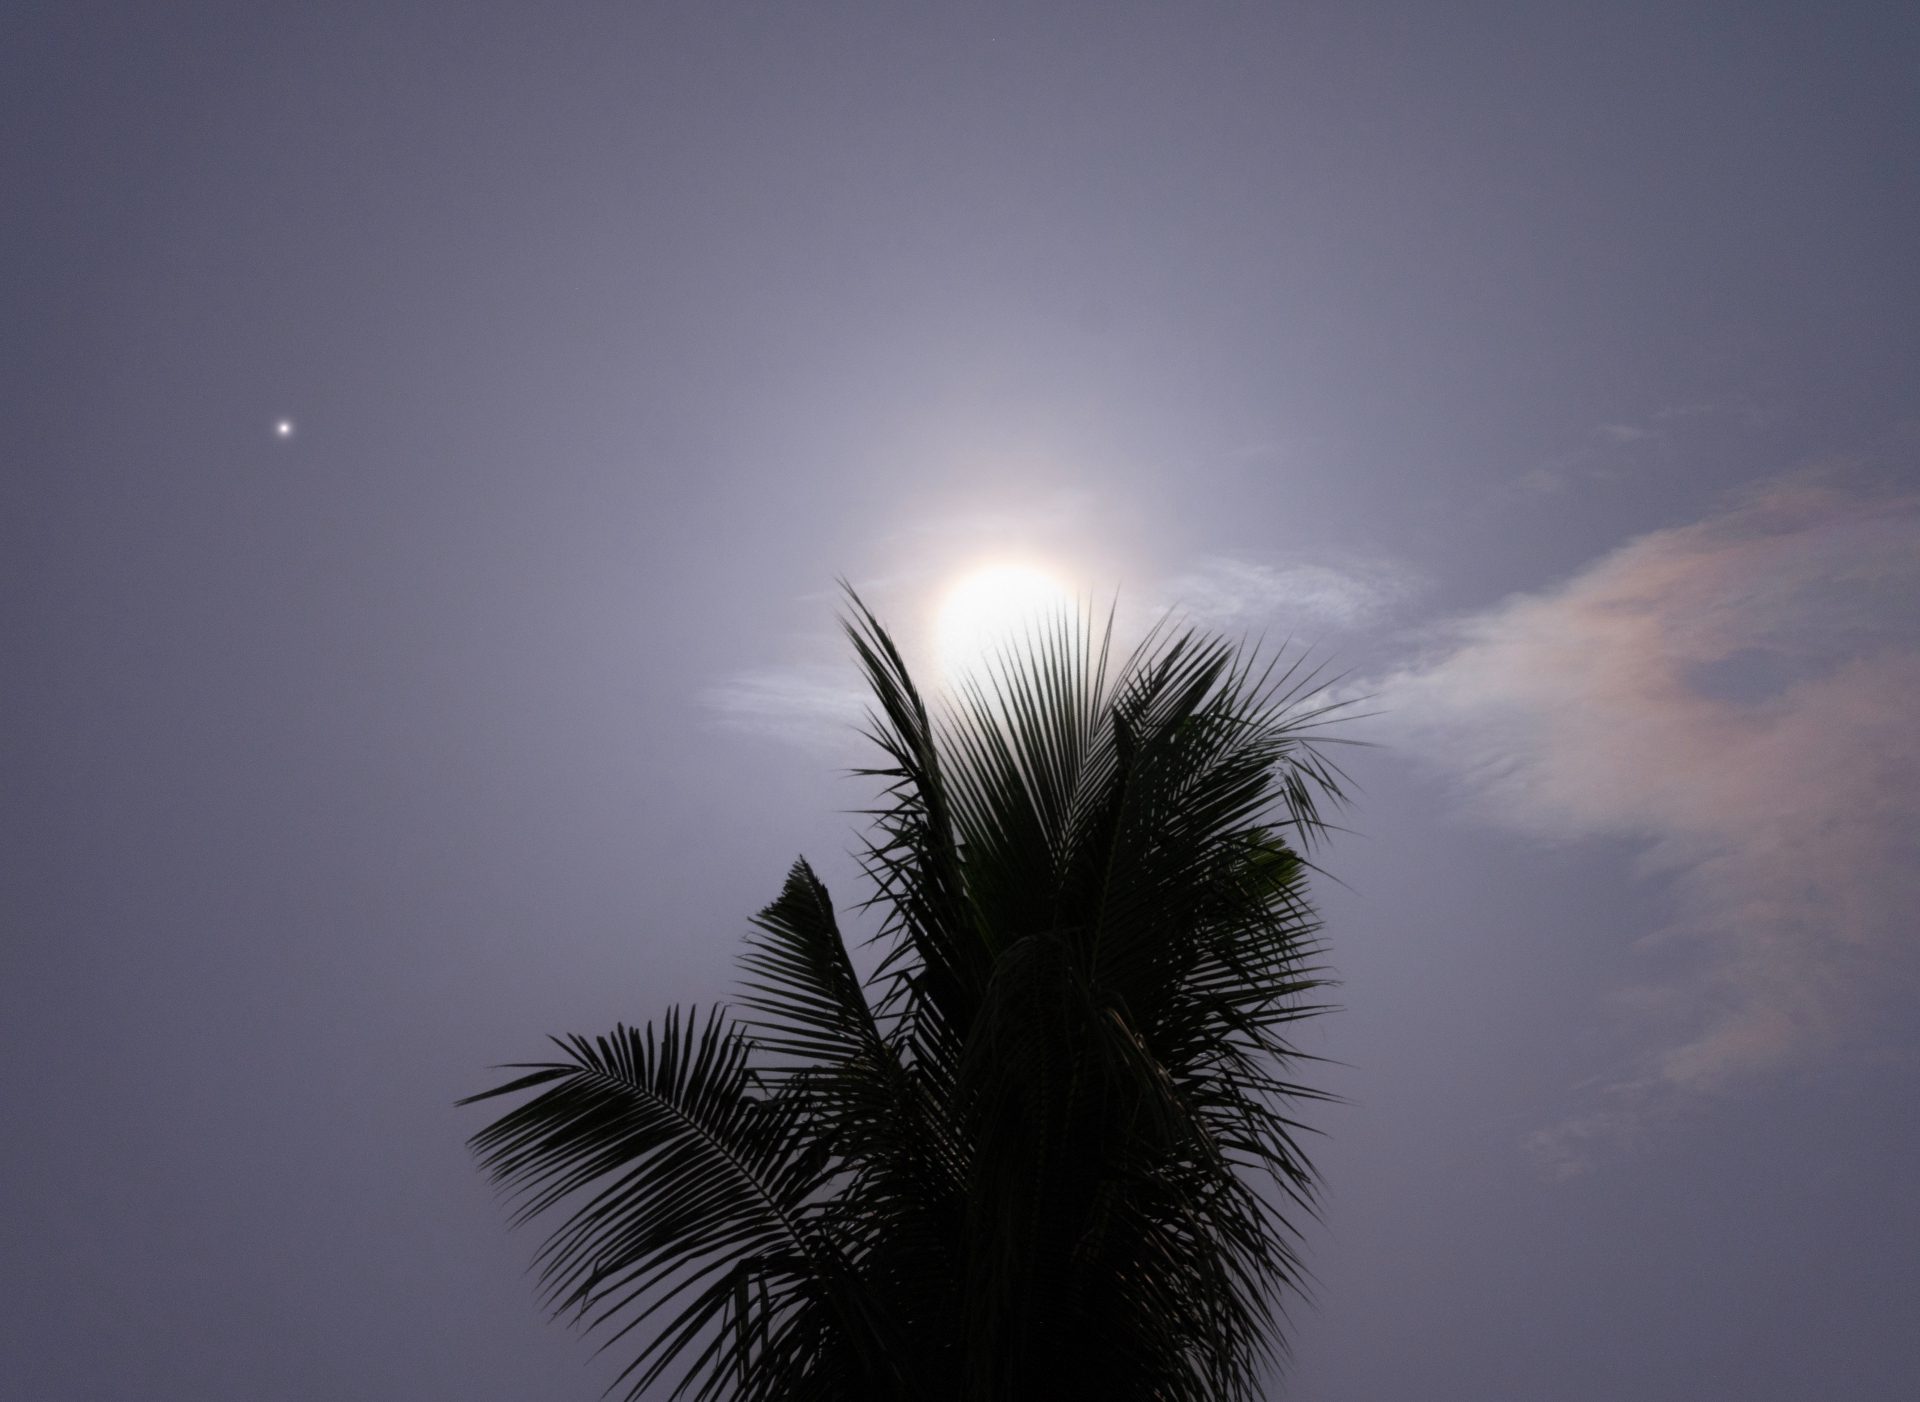 La gigantesca luna blu brilla dietro una palma, con il piccolo punto di Saturno visibile alla sinistra della luna.